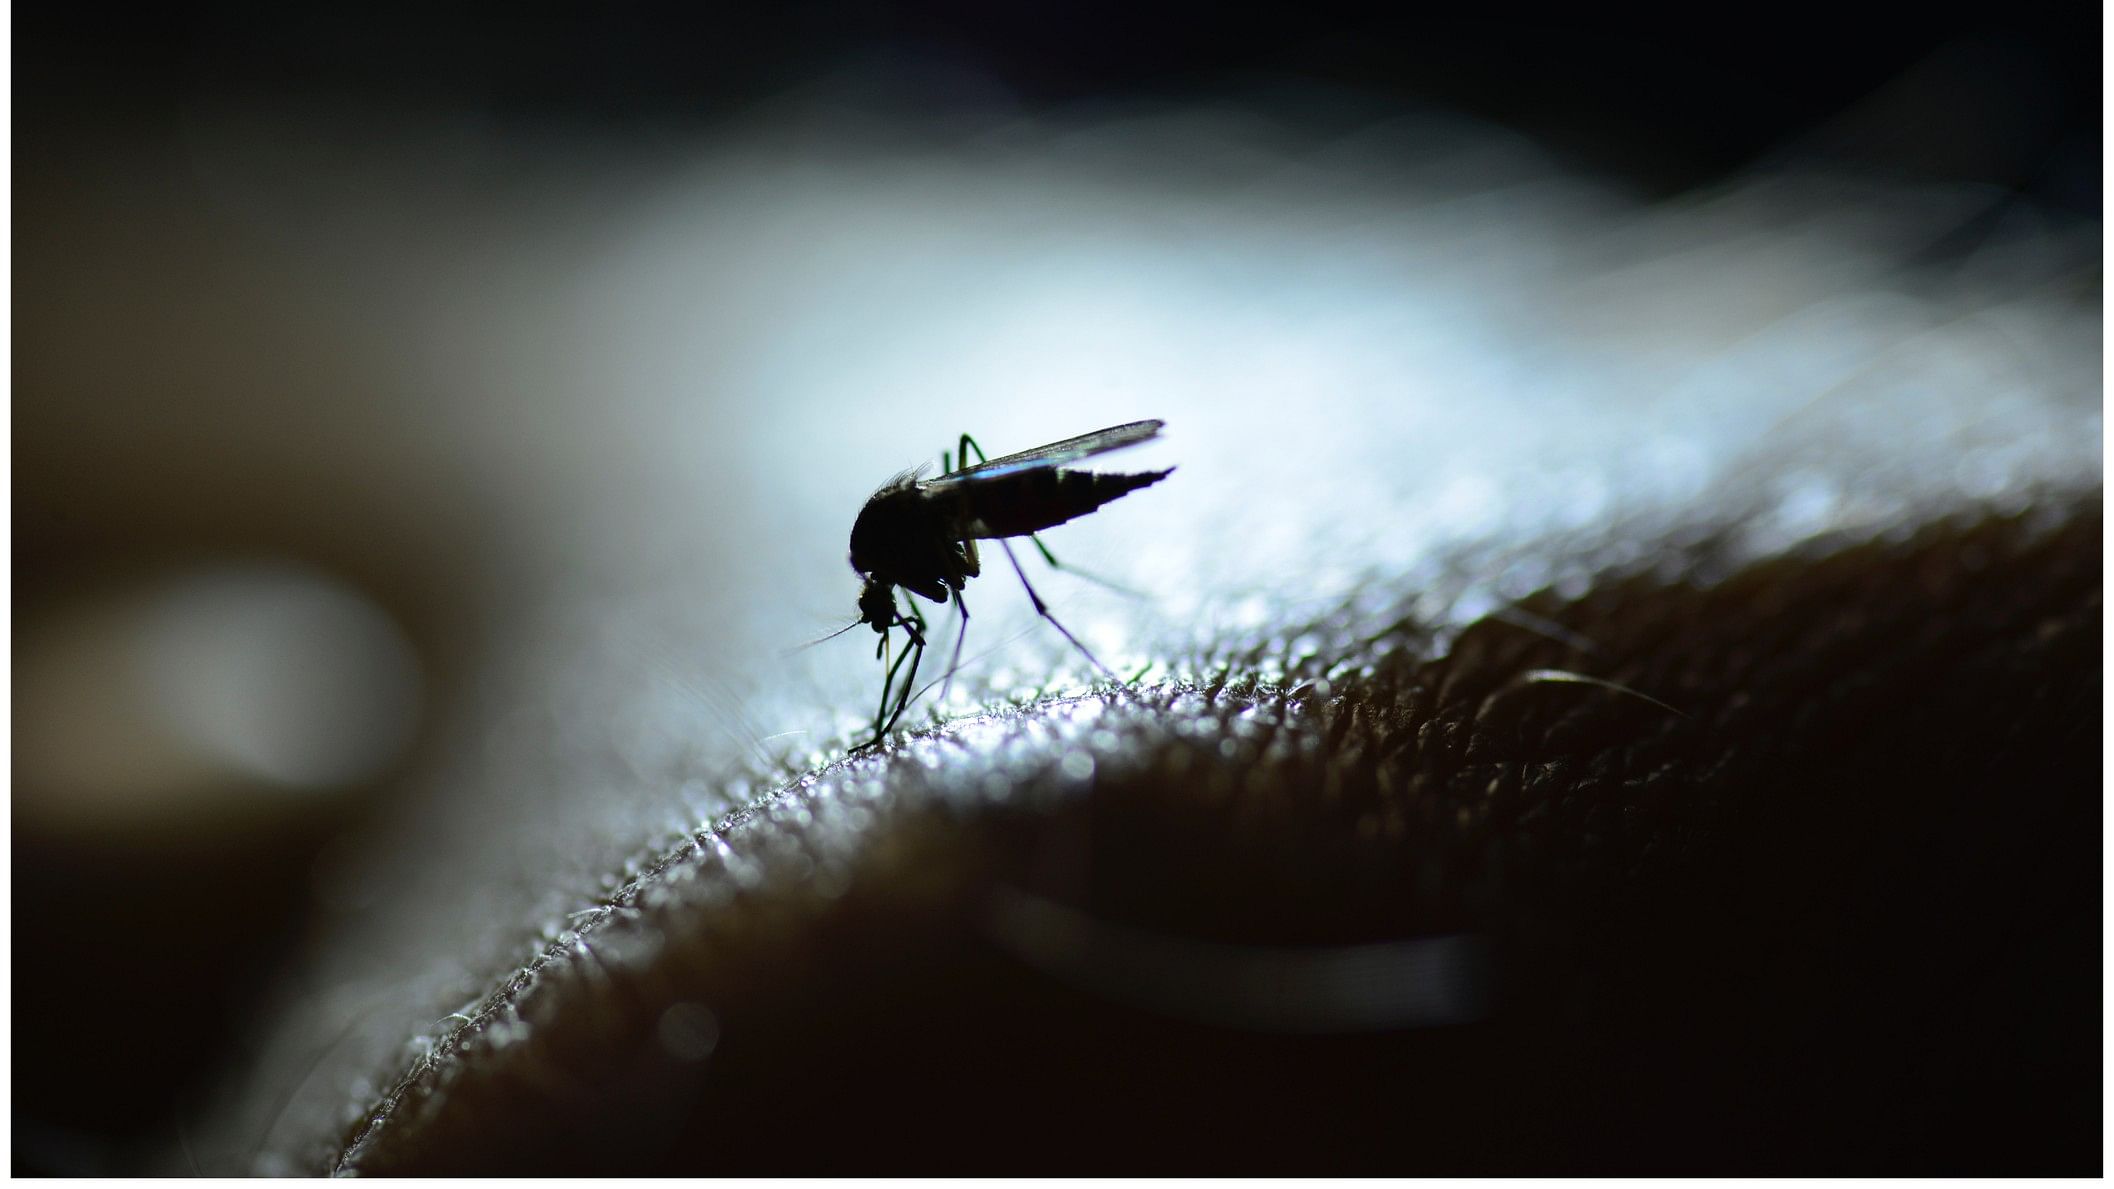 <div class="paragraphs"><p>Representative image of a dengue spreading mosquito.</p></div>